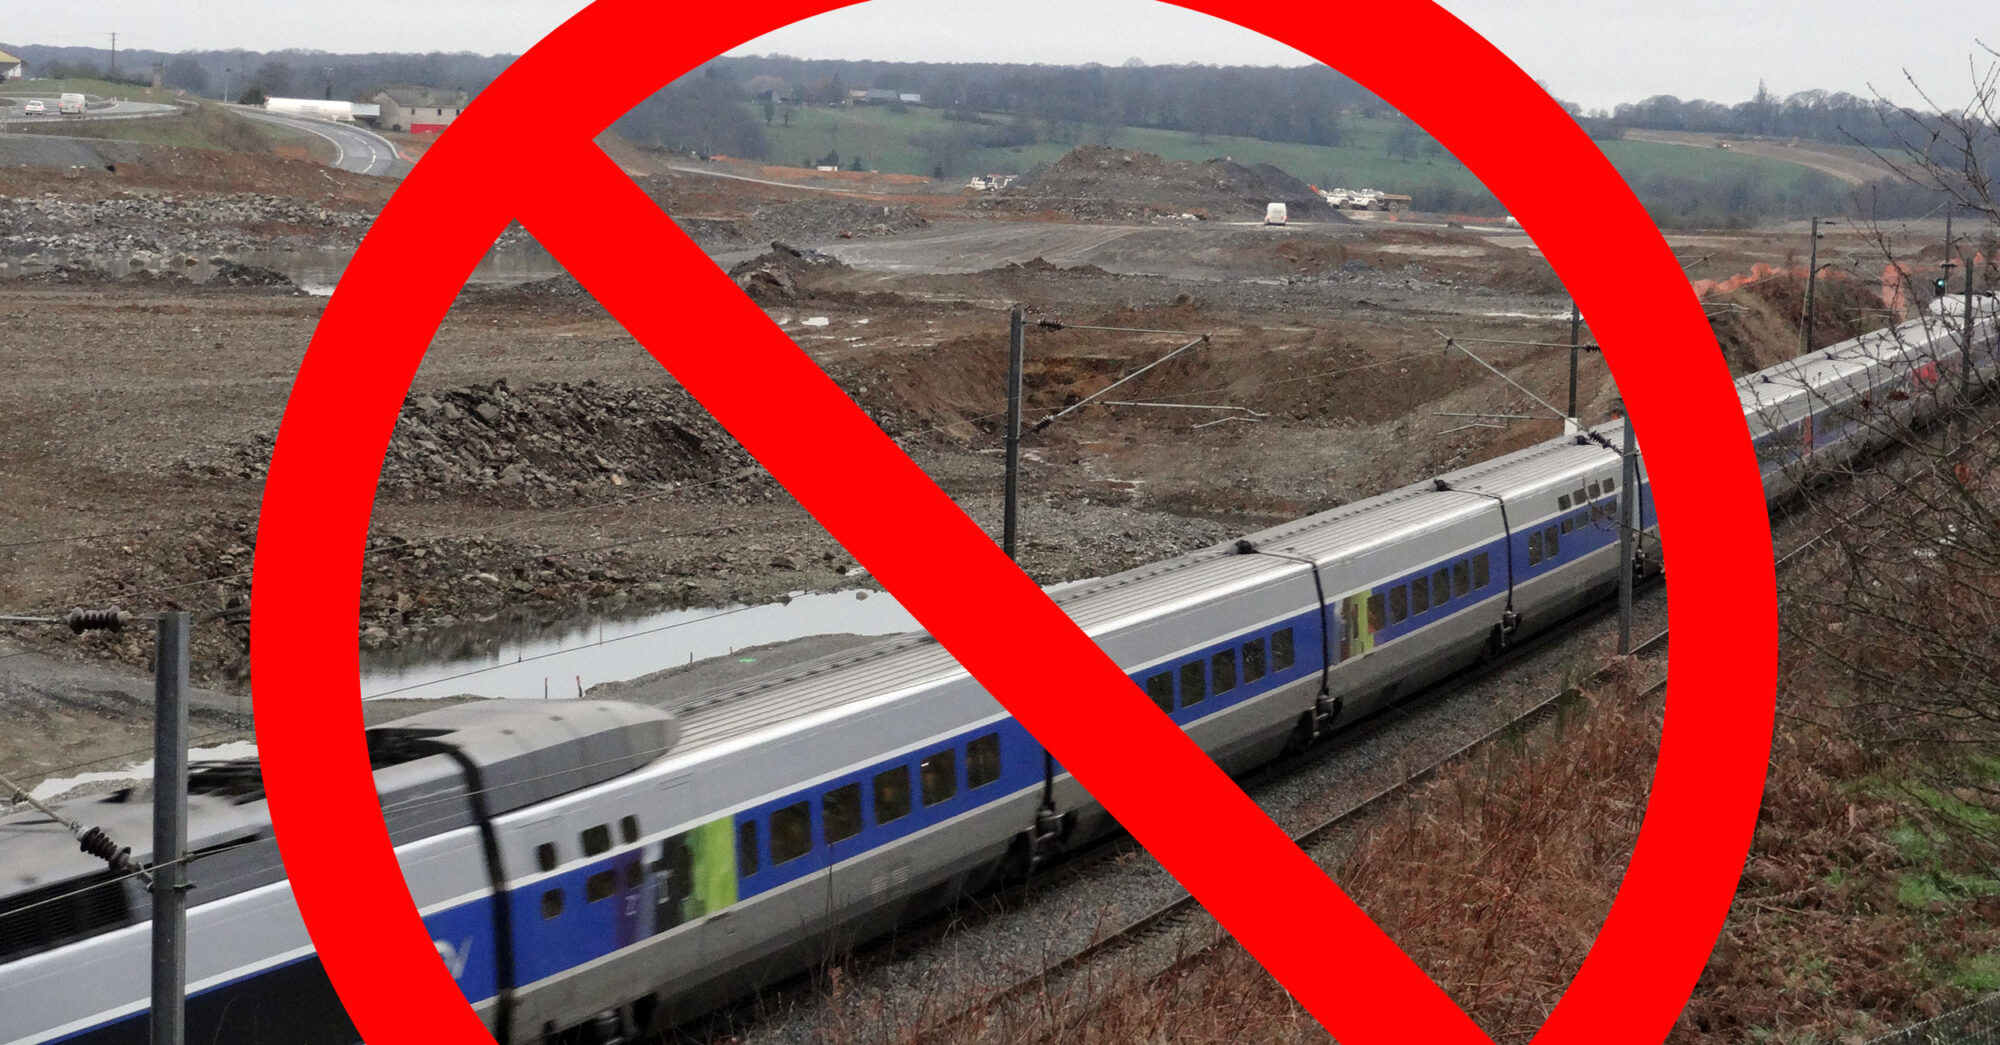 Non à la ligne TGV  – Photo Par Jejecam — Travail personnel, CC BY-SA 3.0, https://commons.wikimedia.org